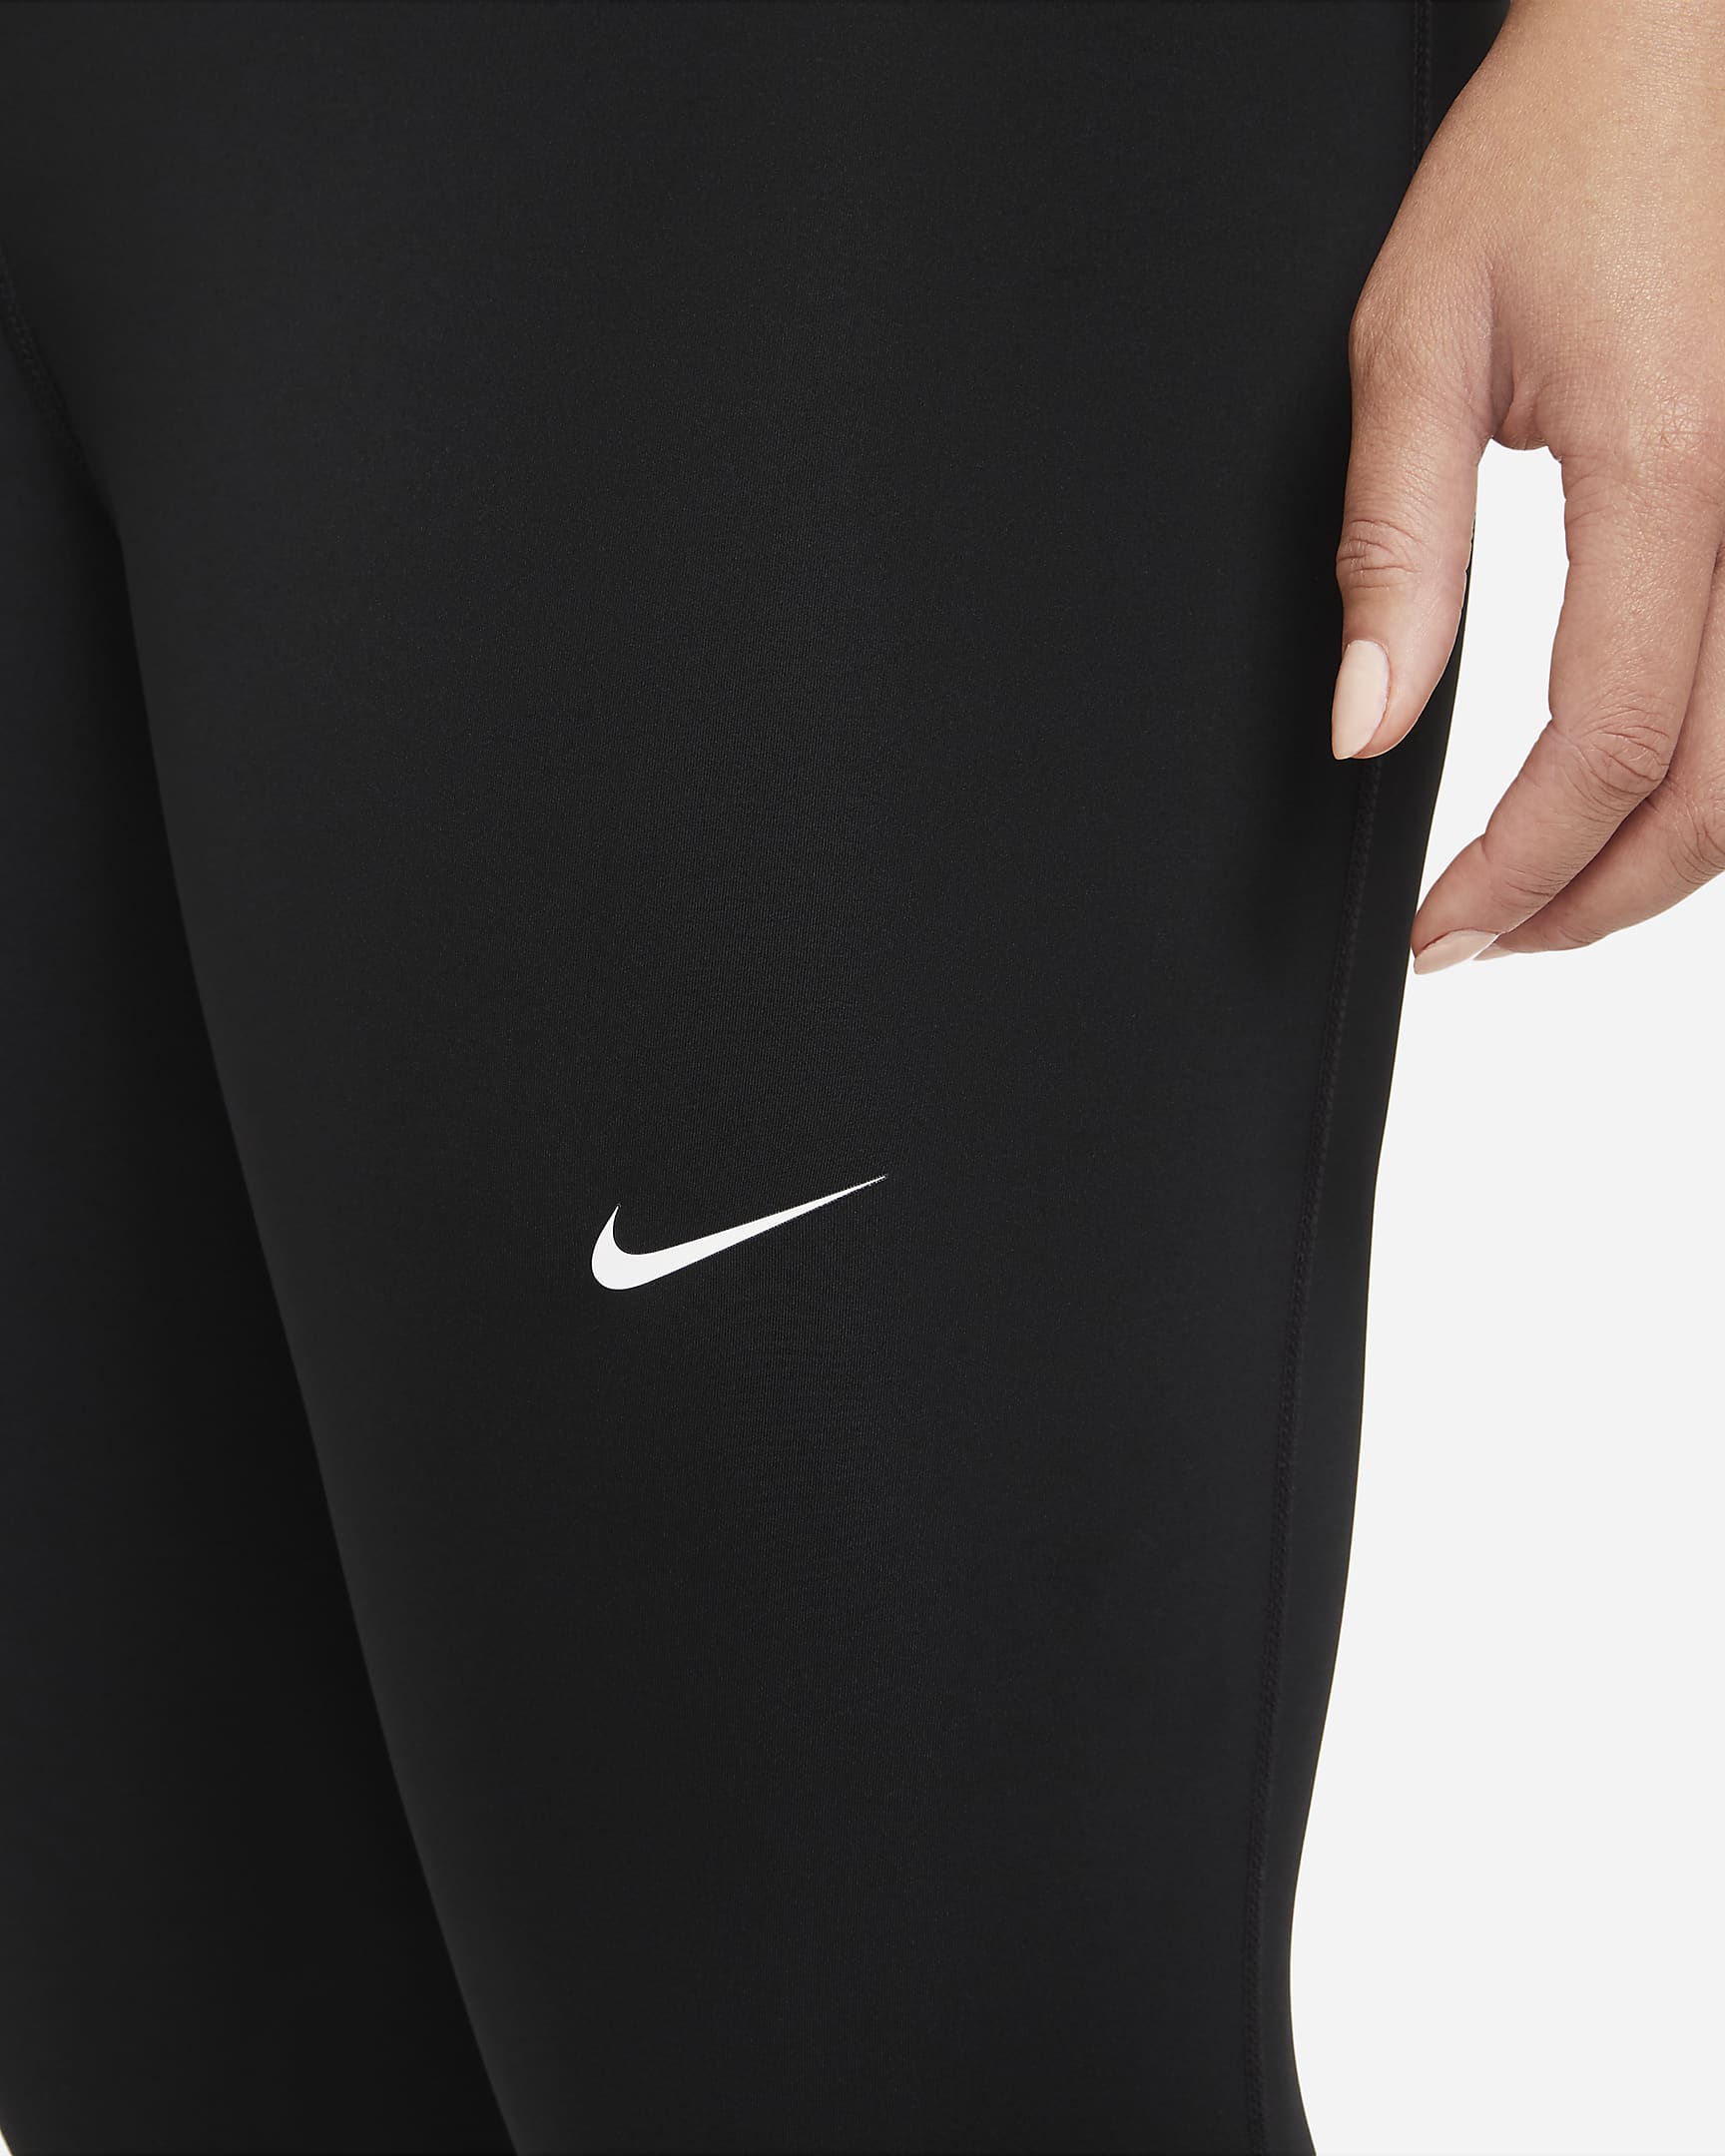 Legginsy damskie (duże rozmiary) Nike Pro 365 - Czerń/Biel